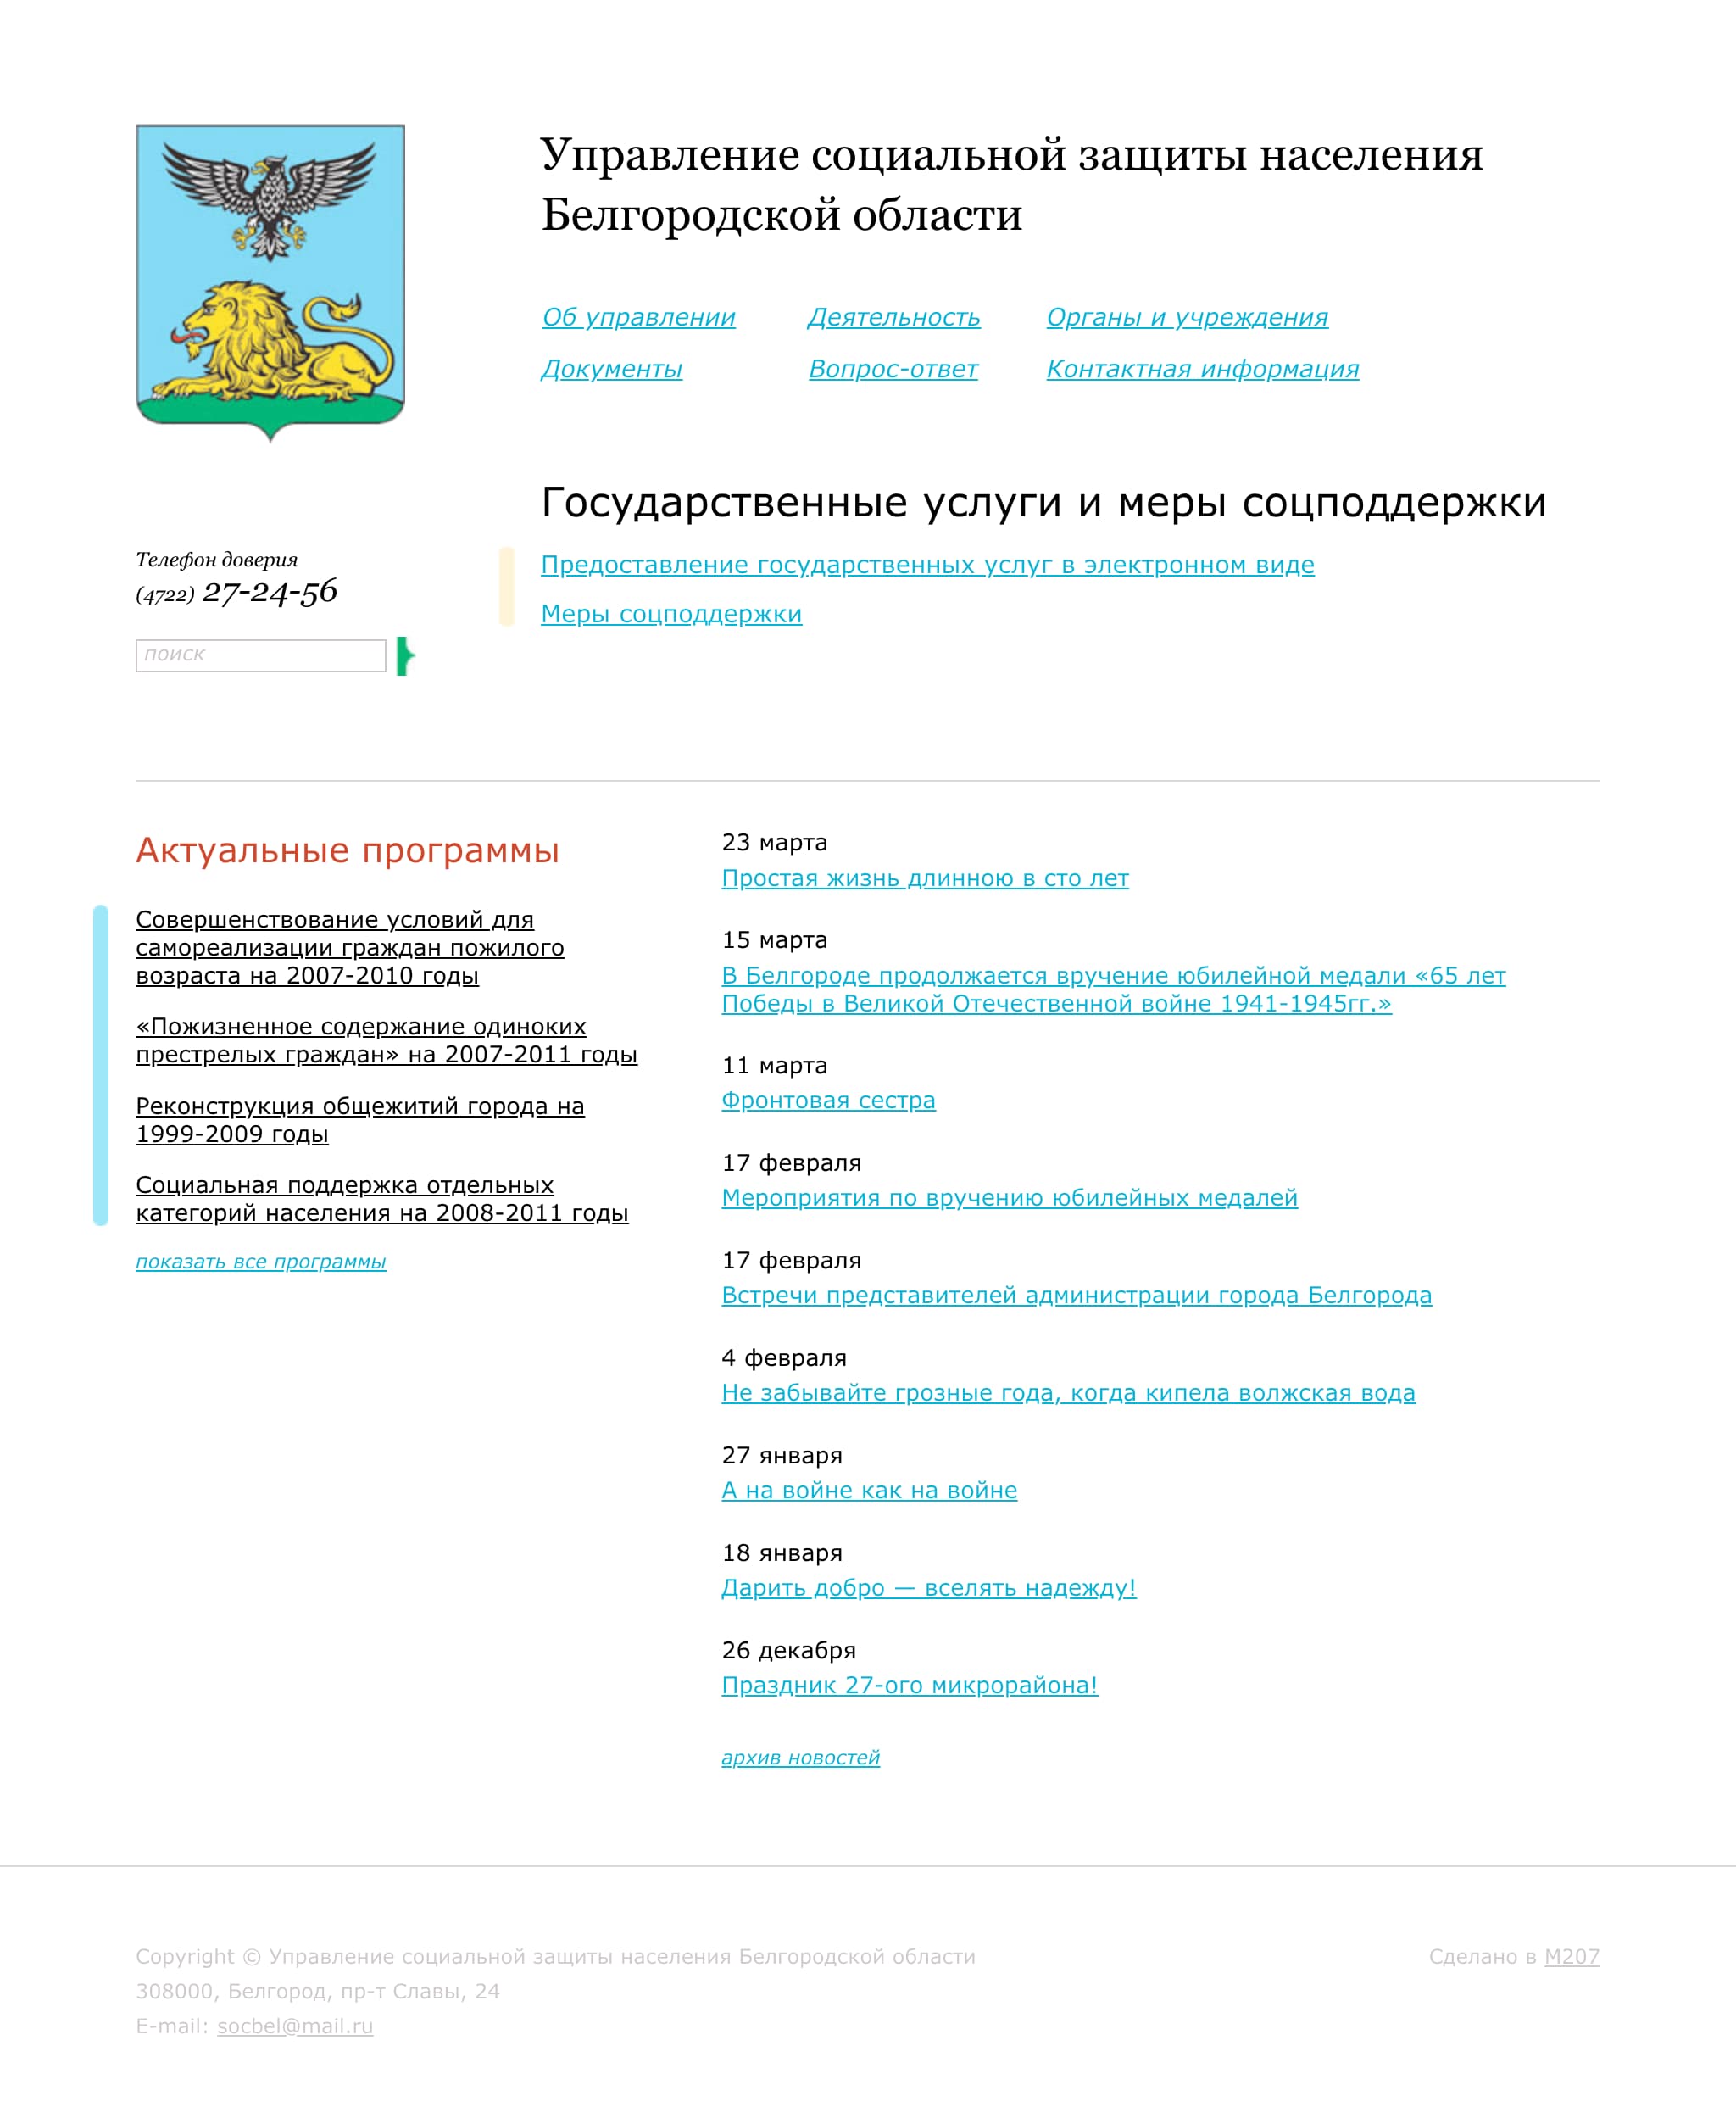 Главная страница Управления социальной защиты населения Белгородской области